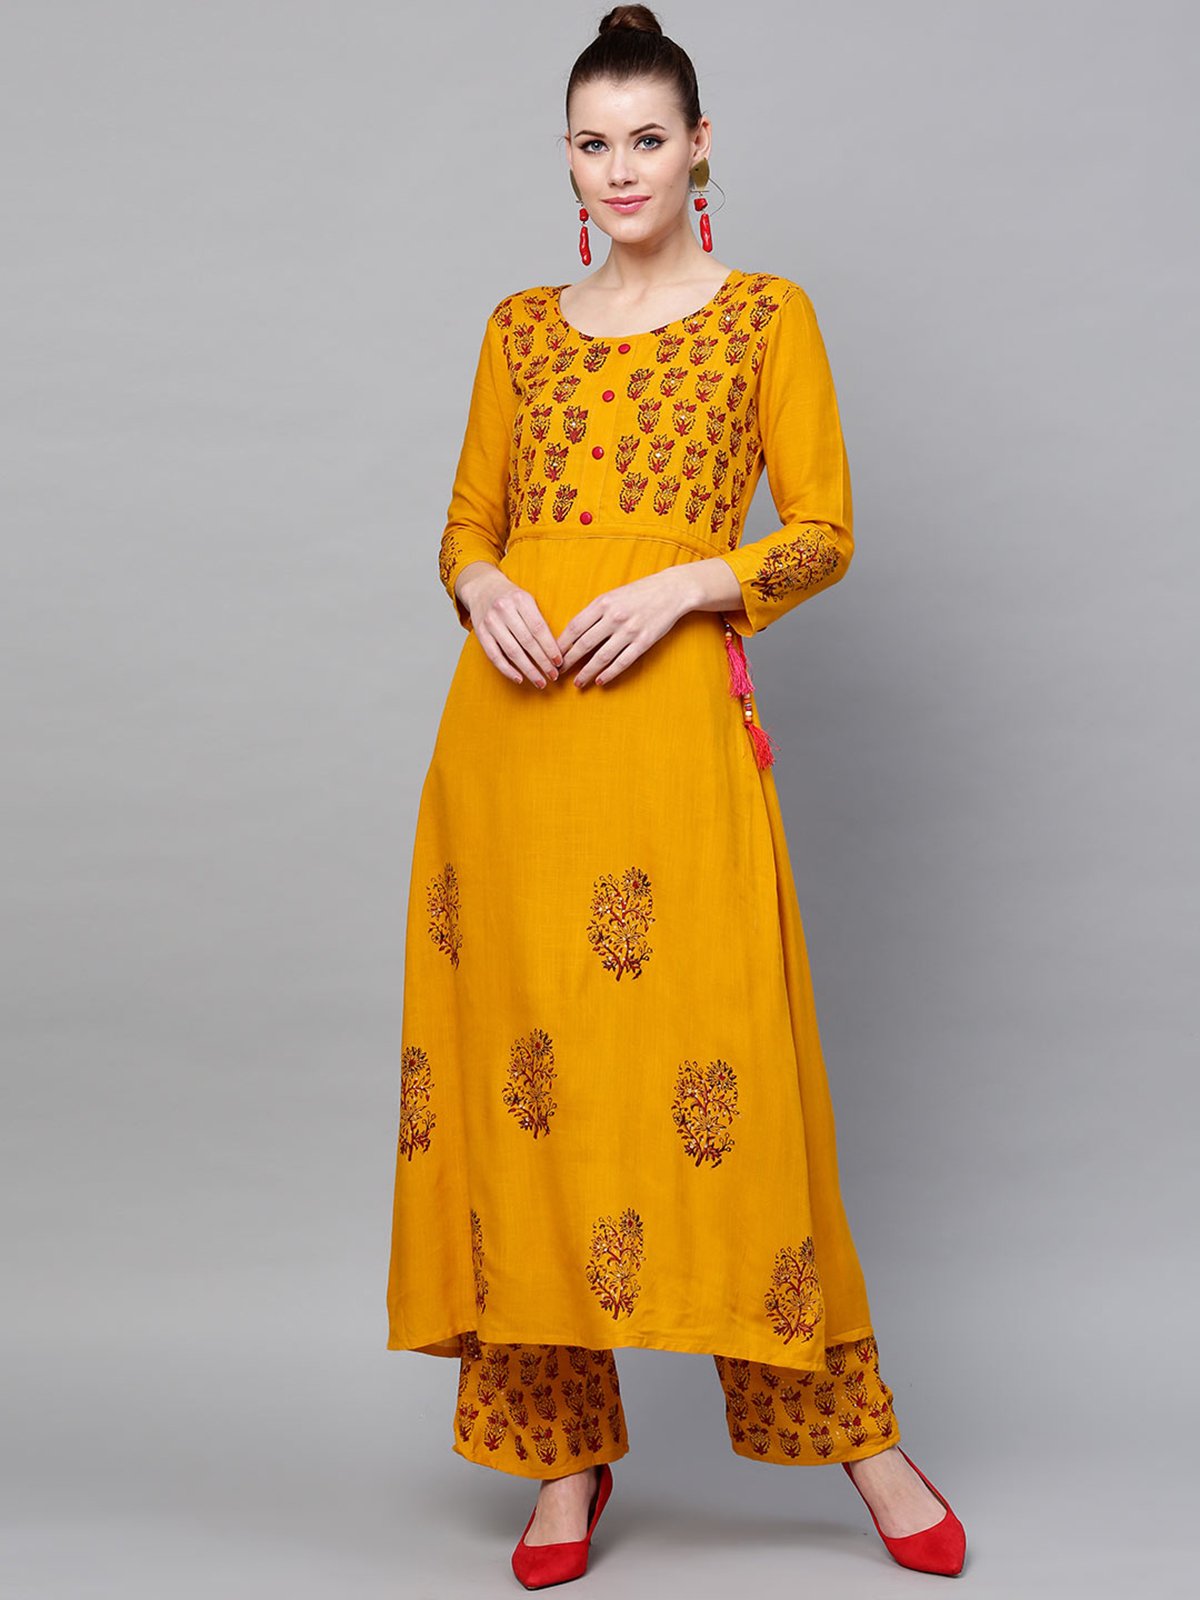 Ishin Women's Rayon Yellow Embellished Anarkali Kurta Palazzo Set